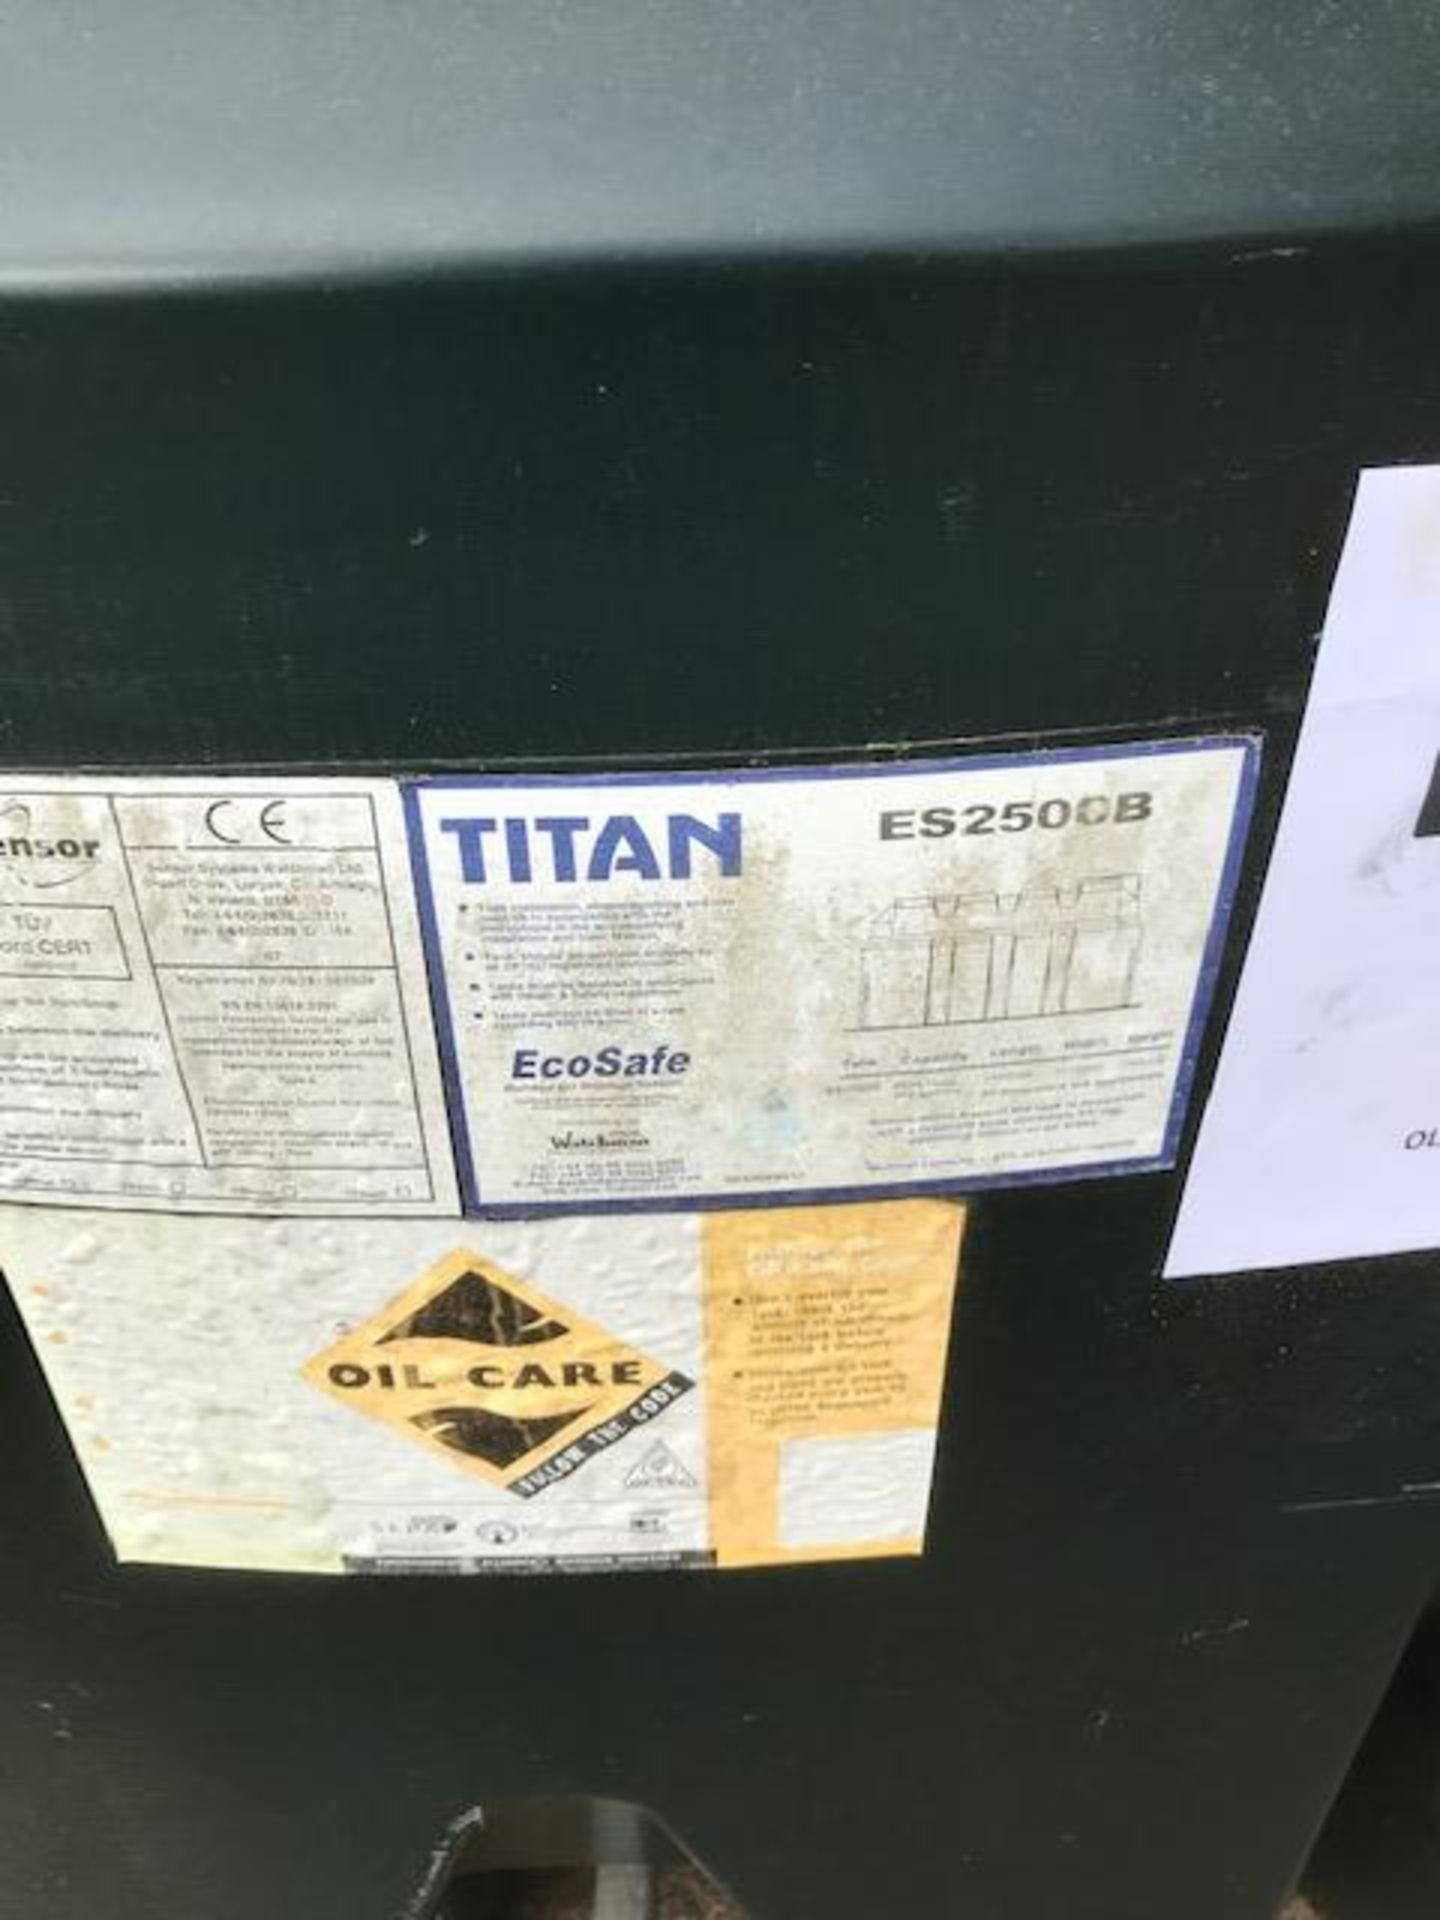 Titan Eco Safe ES 2500 B Bunded Fuel Tank - Image 5 of 5